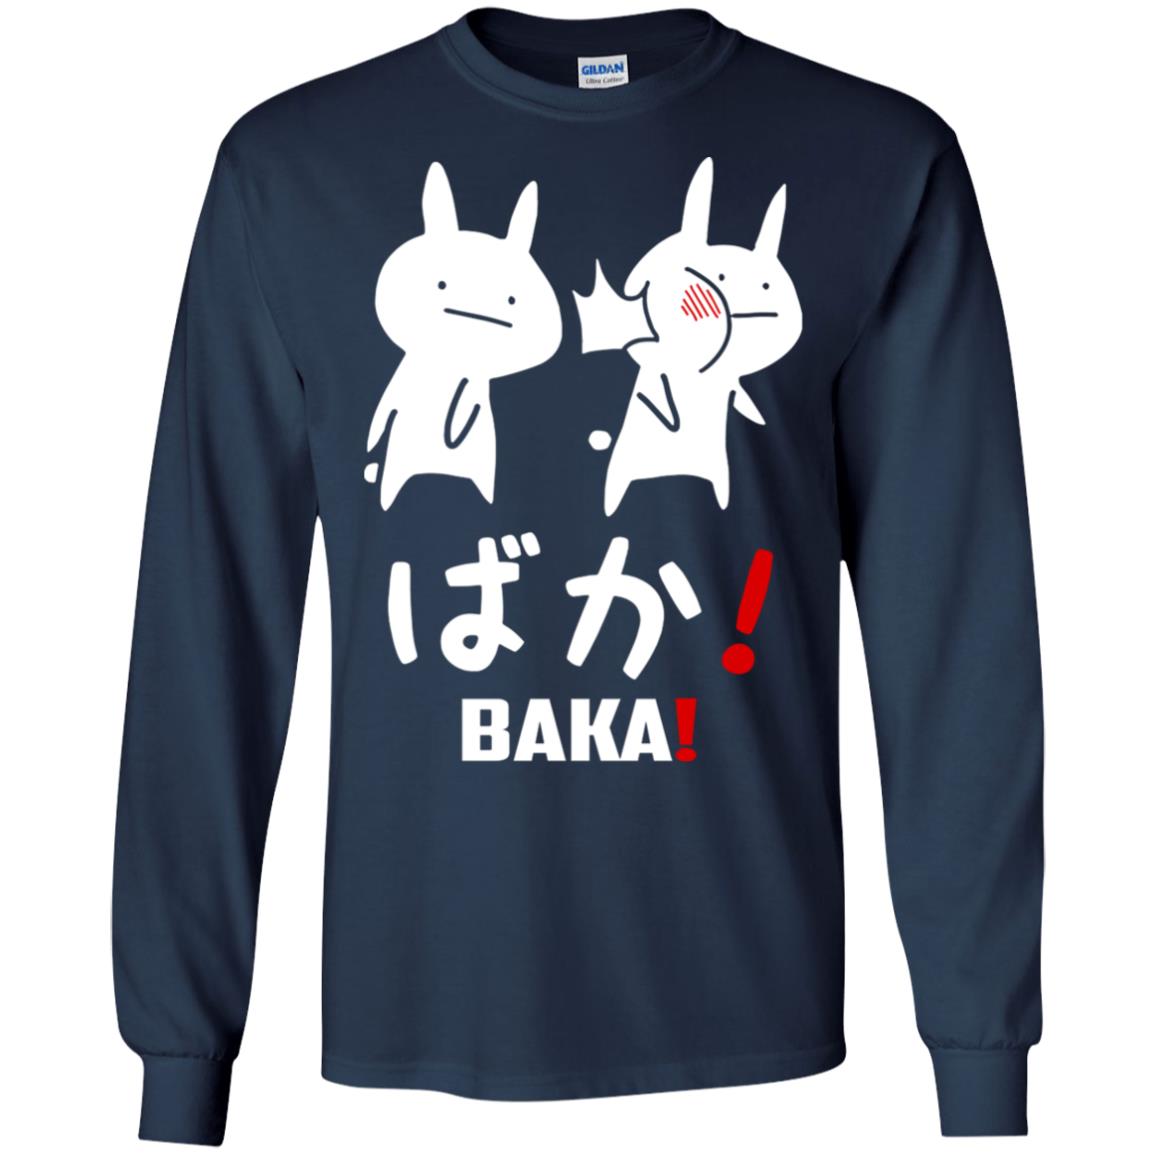 Anime baka rabbit slap japanese hoodie, ls, t shirt